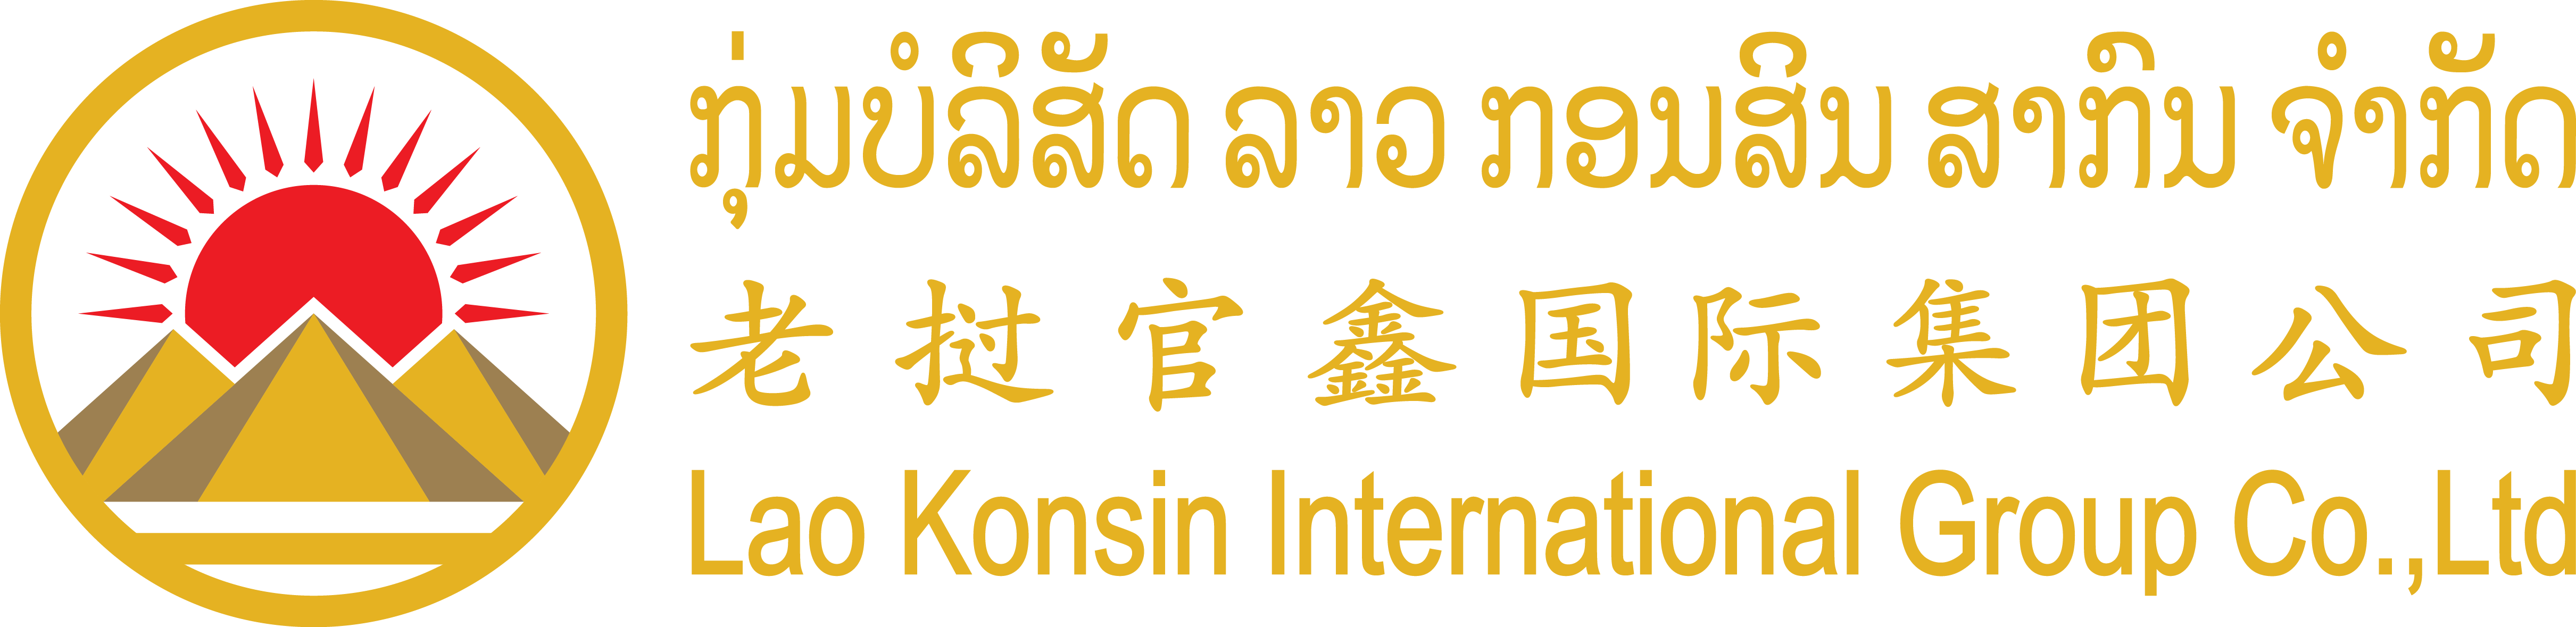 Laokonsin International Group Co., Ltd